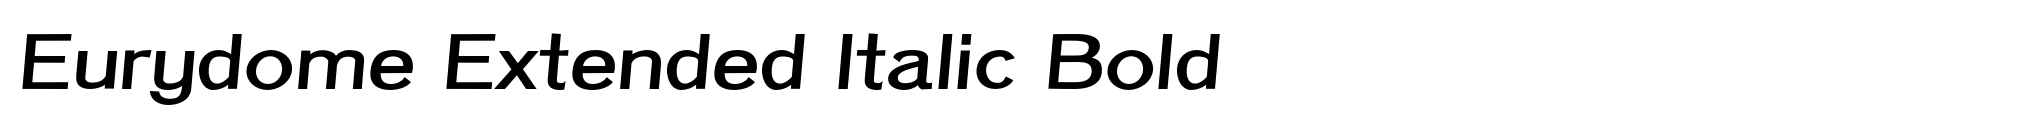 Eurydome Extended Italic Bold image